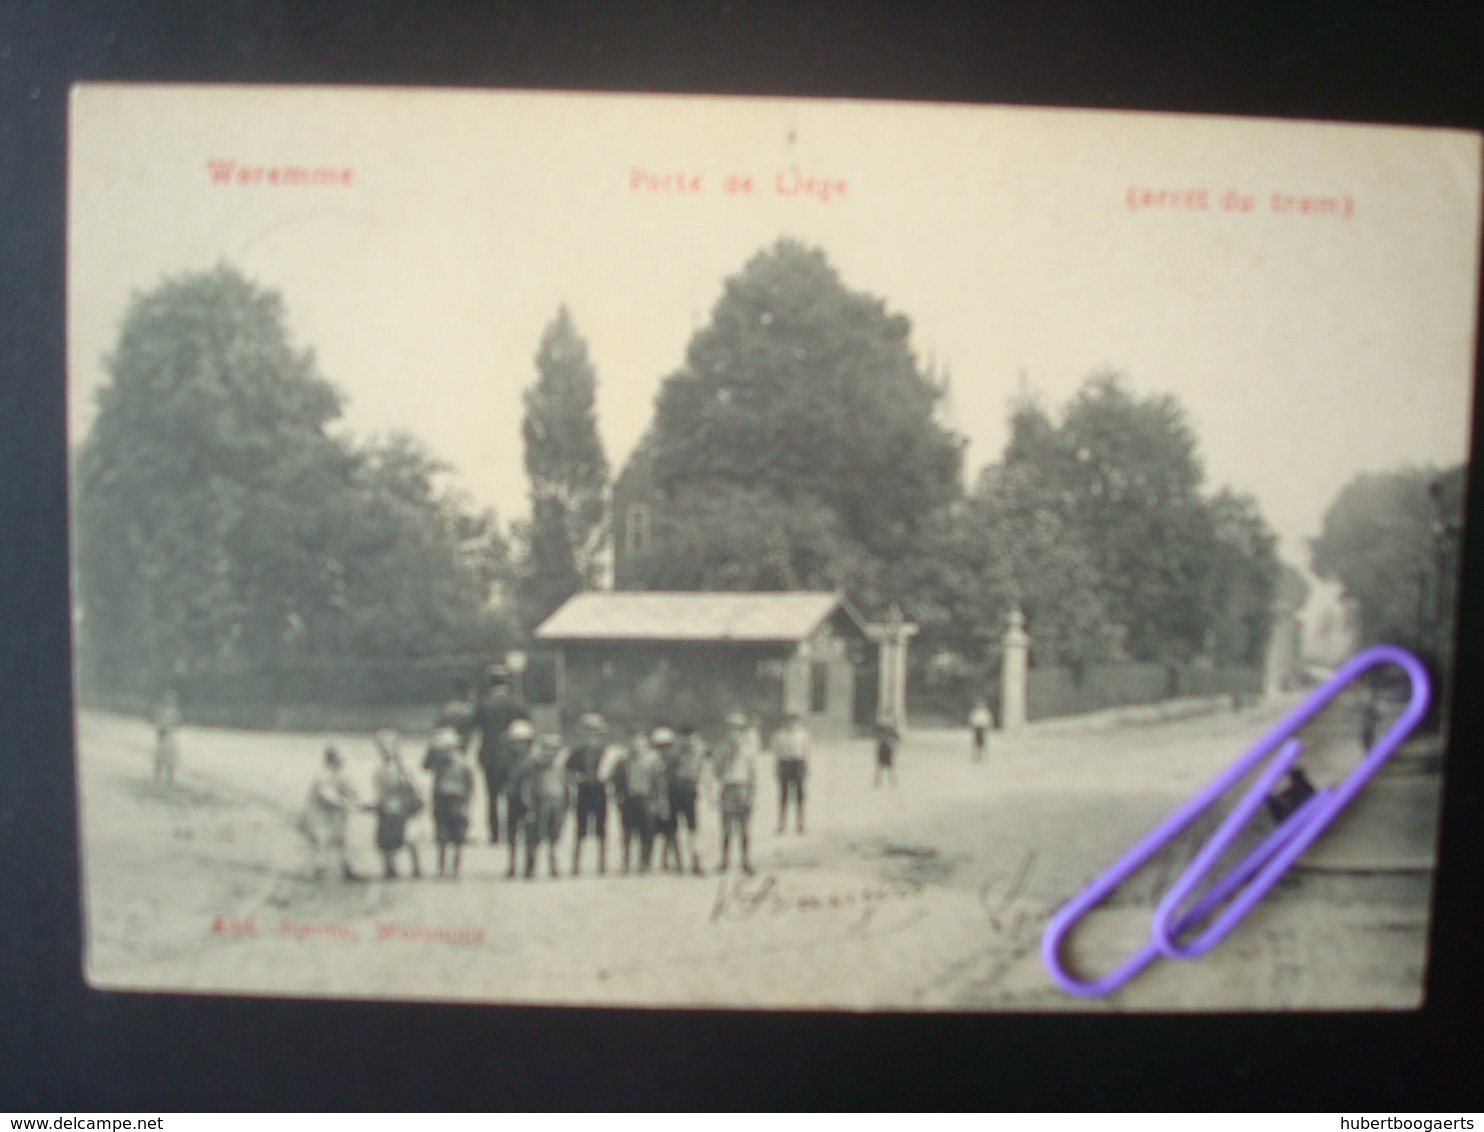 WAREMME : Porte De Liège (arrêt Du Tram) En 1908 - Waremme